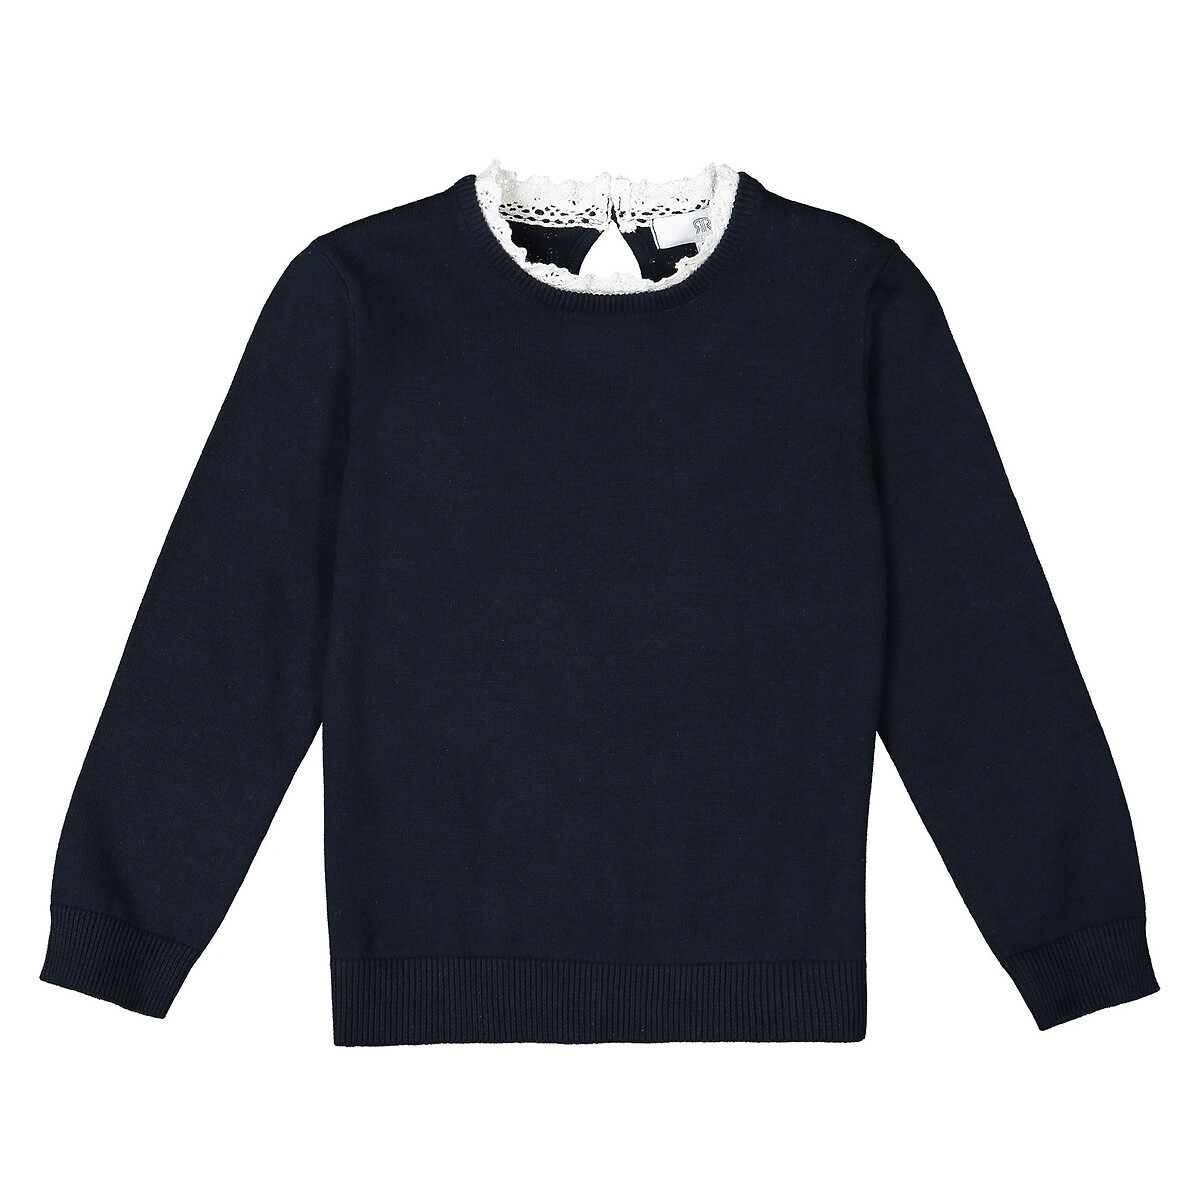 Пуловер La Redoute С эффектом  в  воротник связан крючком  3 года - 94 см синий, размер 3 года - 94 см - фото 2